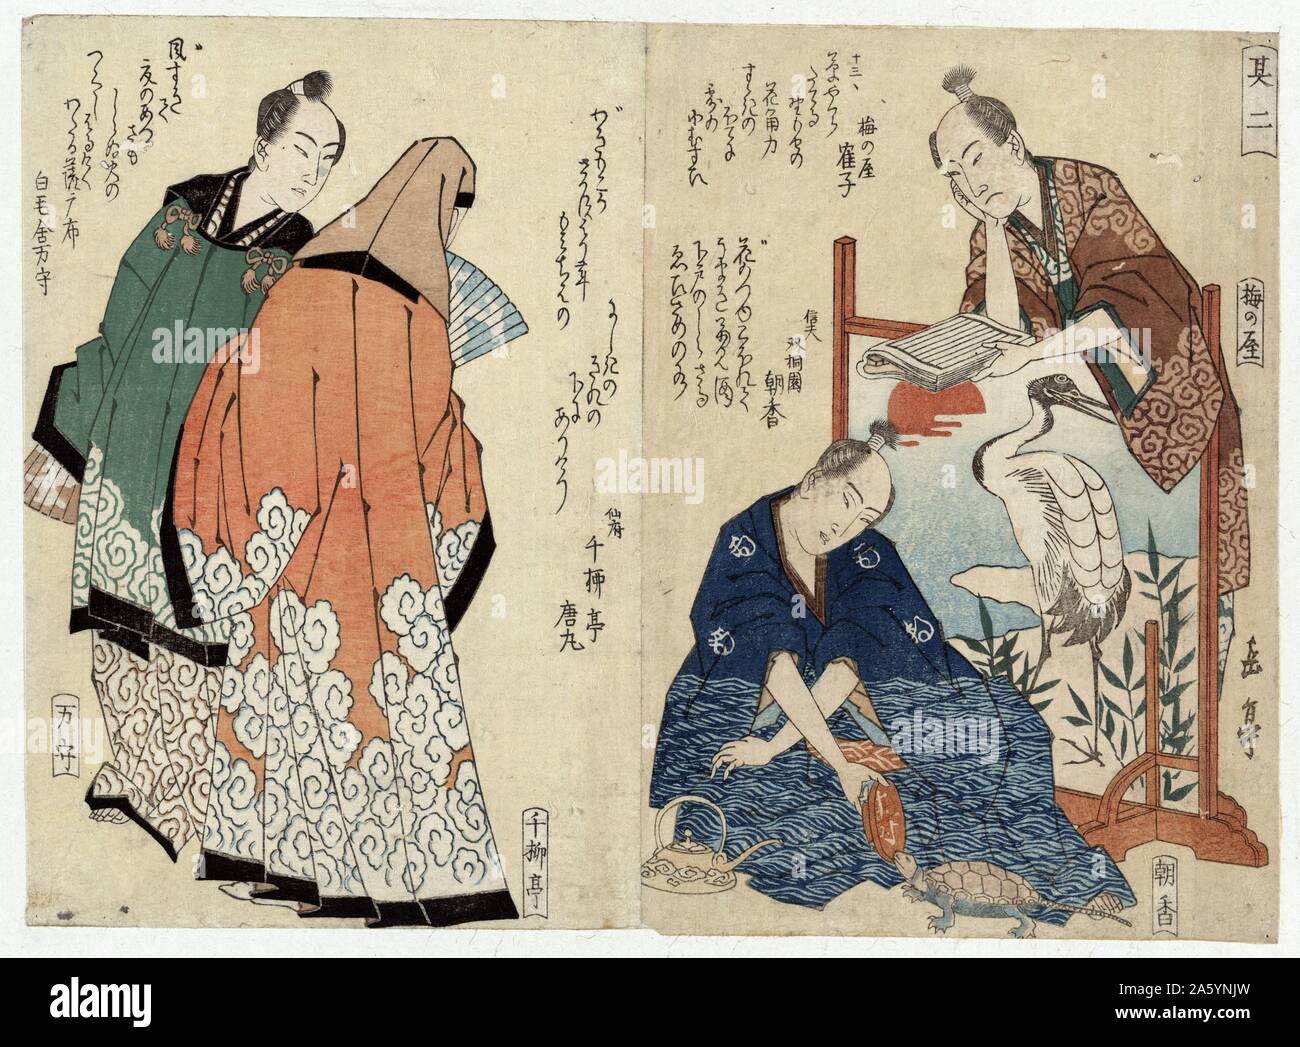 Kyoka hassen sono ni (Traduzione: Otto Kyoka poeti 2) Da Yajima, attivo del XIX secolo, artista giapponese. Pittura d a tra il 1818 e il 1824. Stampa mostra tre uomini e una donna (poeti); un uomo è in piedi dietro uno schermo bassa, lettura; un altro è seduto sul pavimento di fronte allo schermo, alimentando una tartaruga da un vaso; il terzo uomo e la donna sono in piedi sulla sinistra. Foto Stock